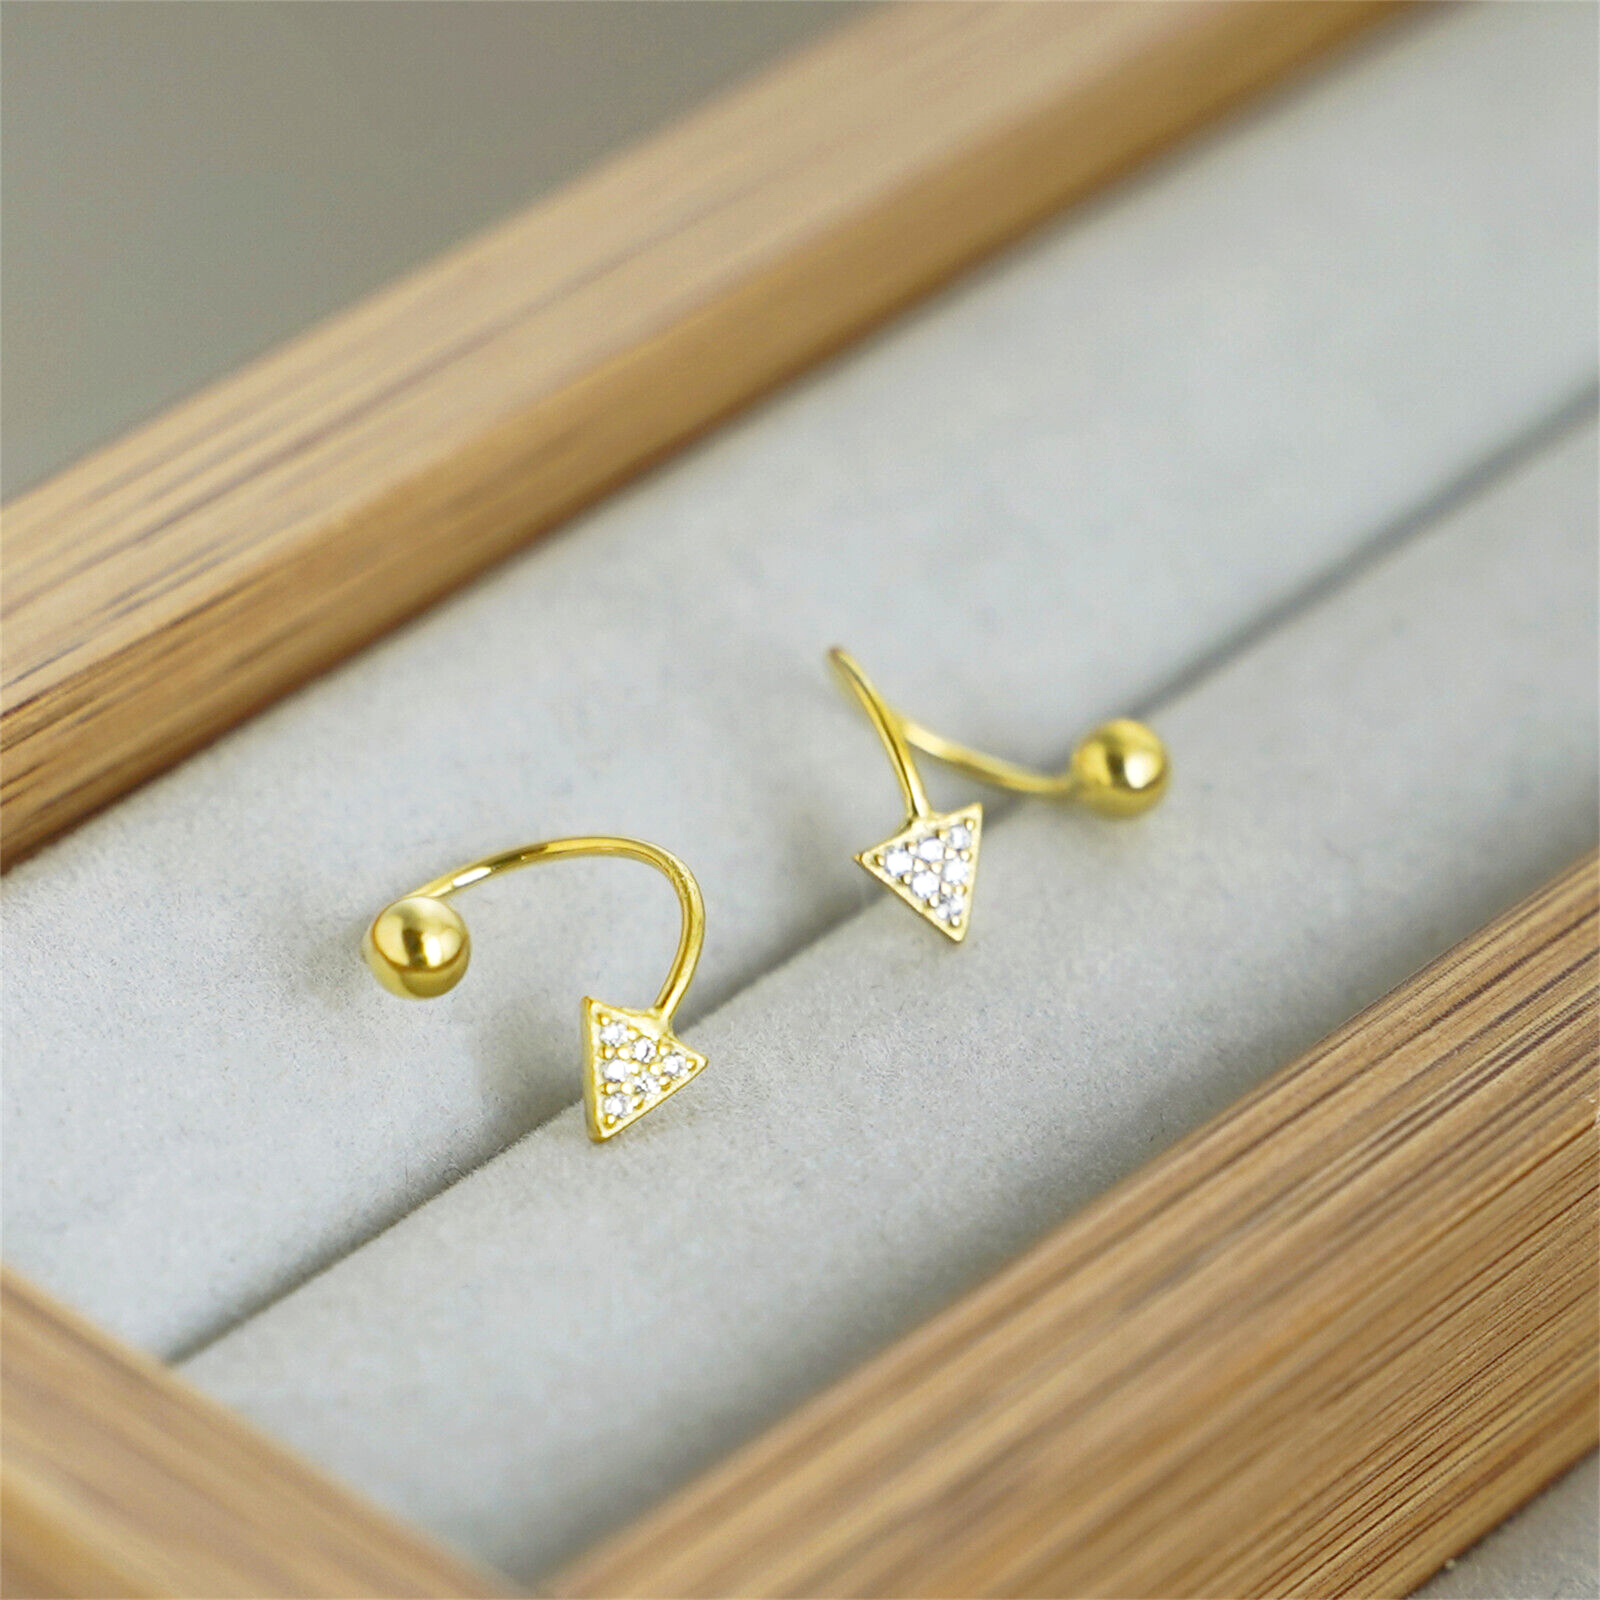 CZ Arrow Stud Earrings | Twirl Wire Huggie Screw Back Beads Earrings in 18K Gold on Sterling Silver - sugarkittenlondon